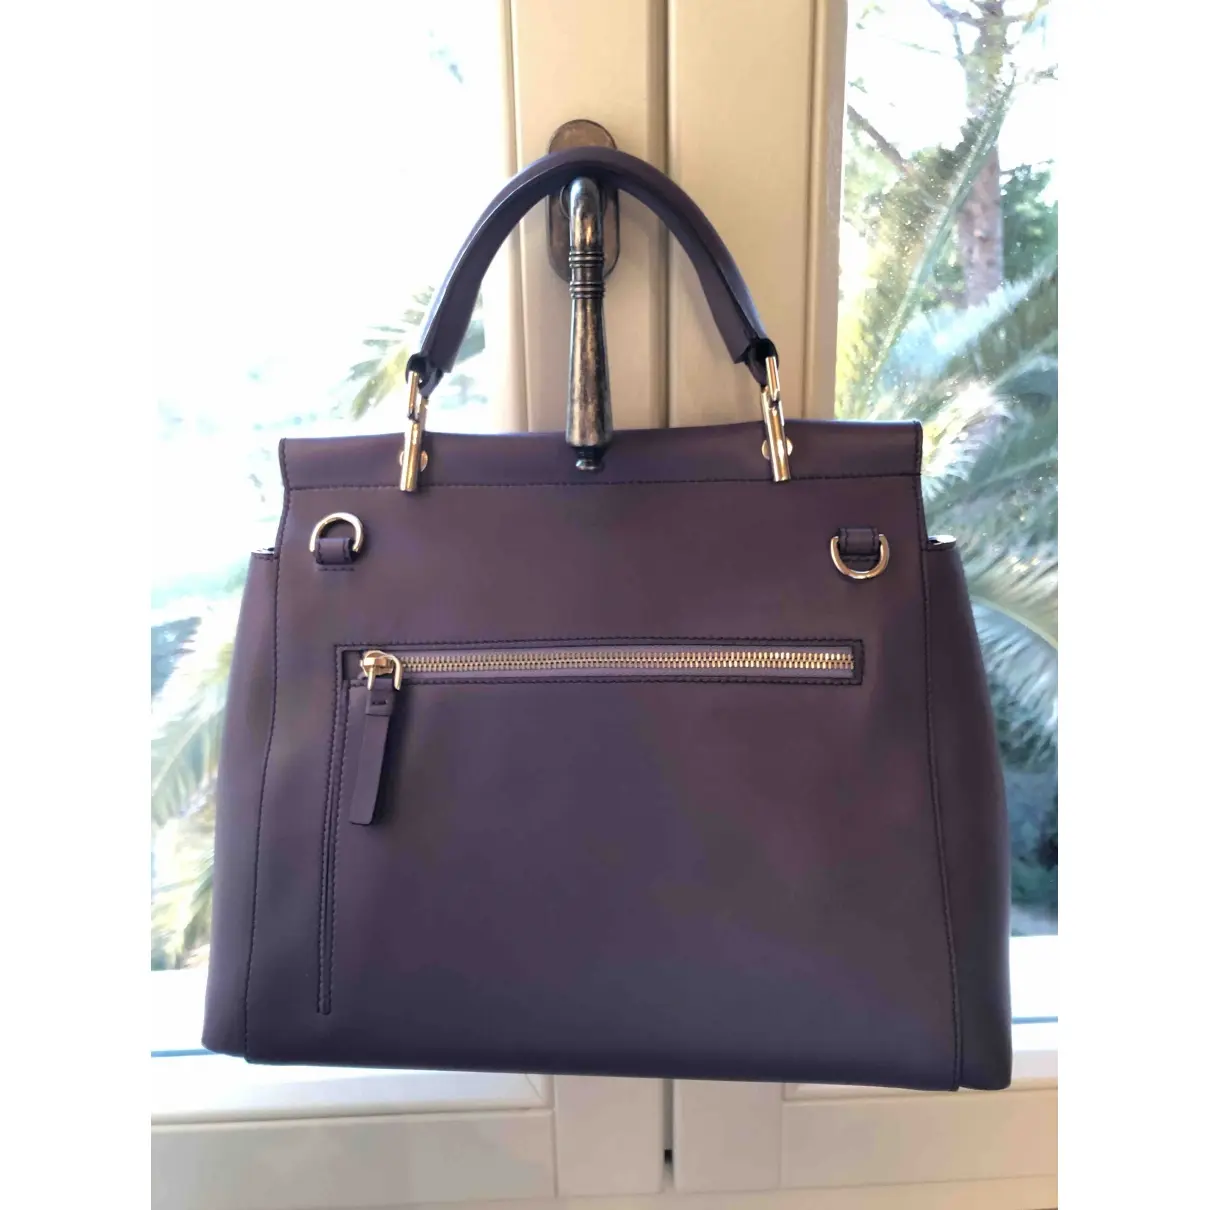 Roger Vivier Leather handbag for sale